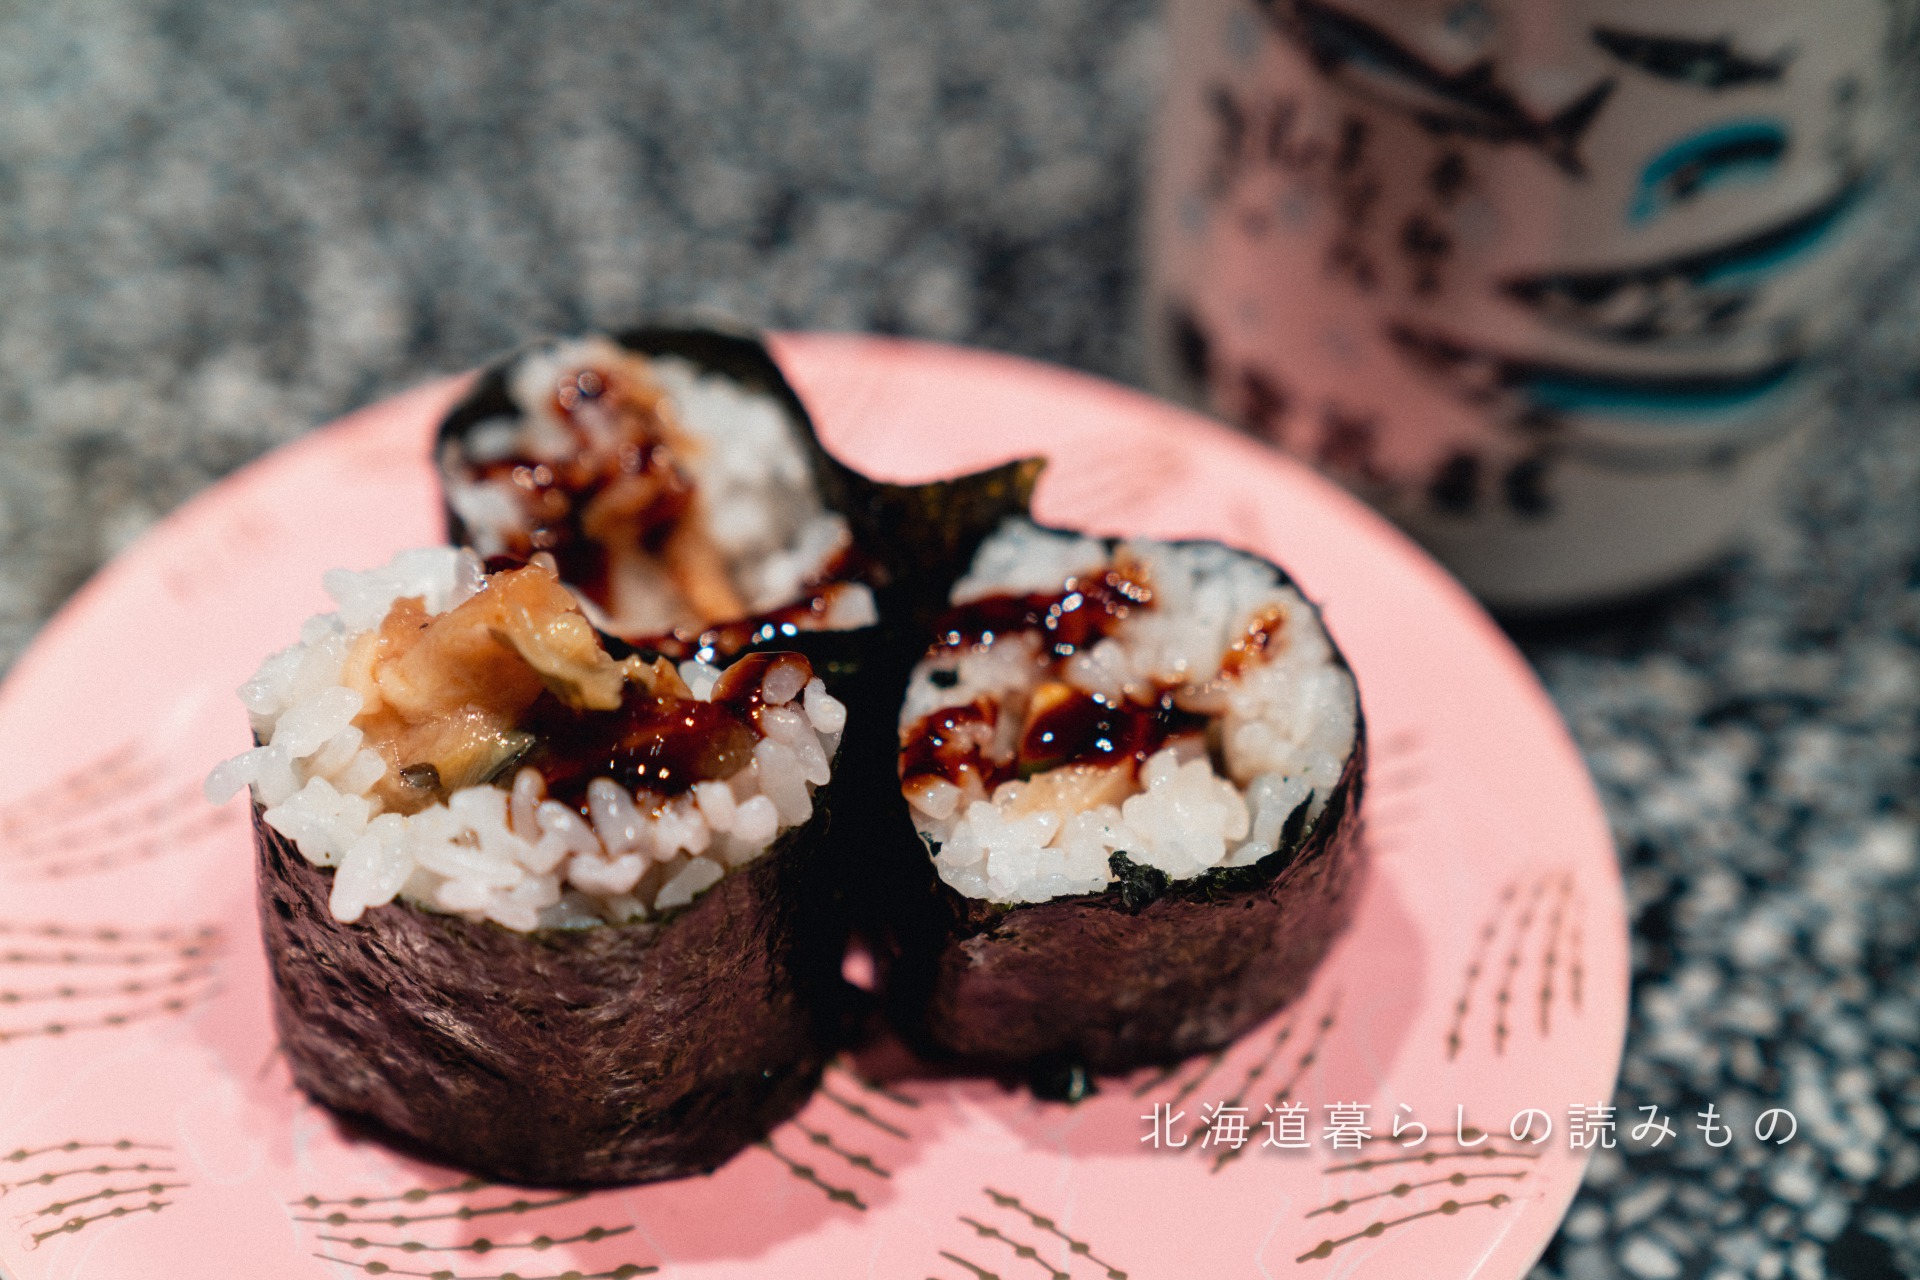 迴轉壽司根室花丸的菜單上的「星鰻巻壽司」